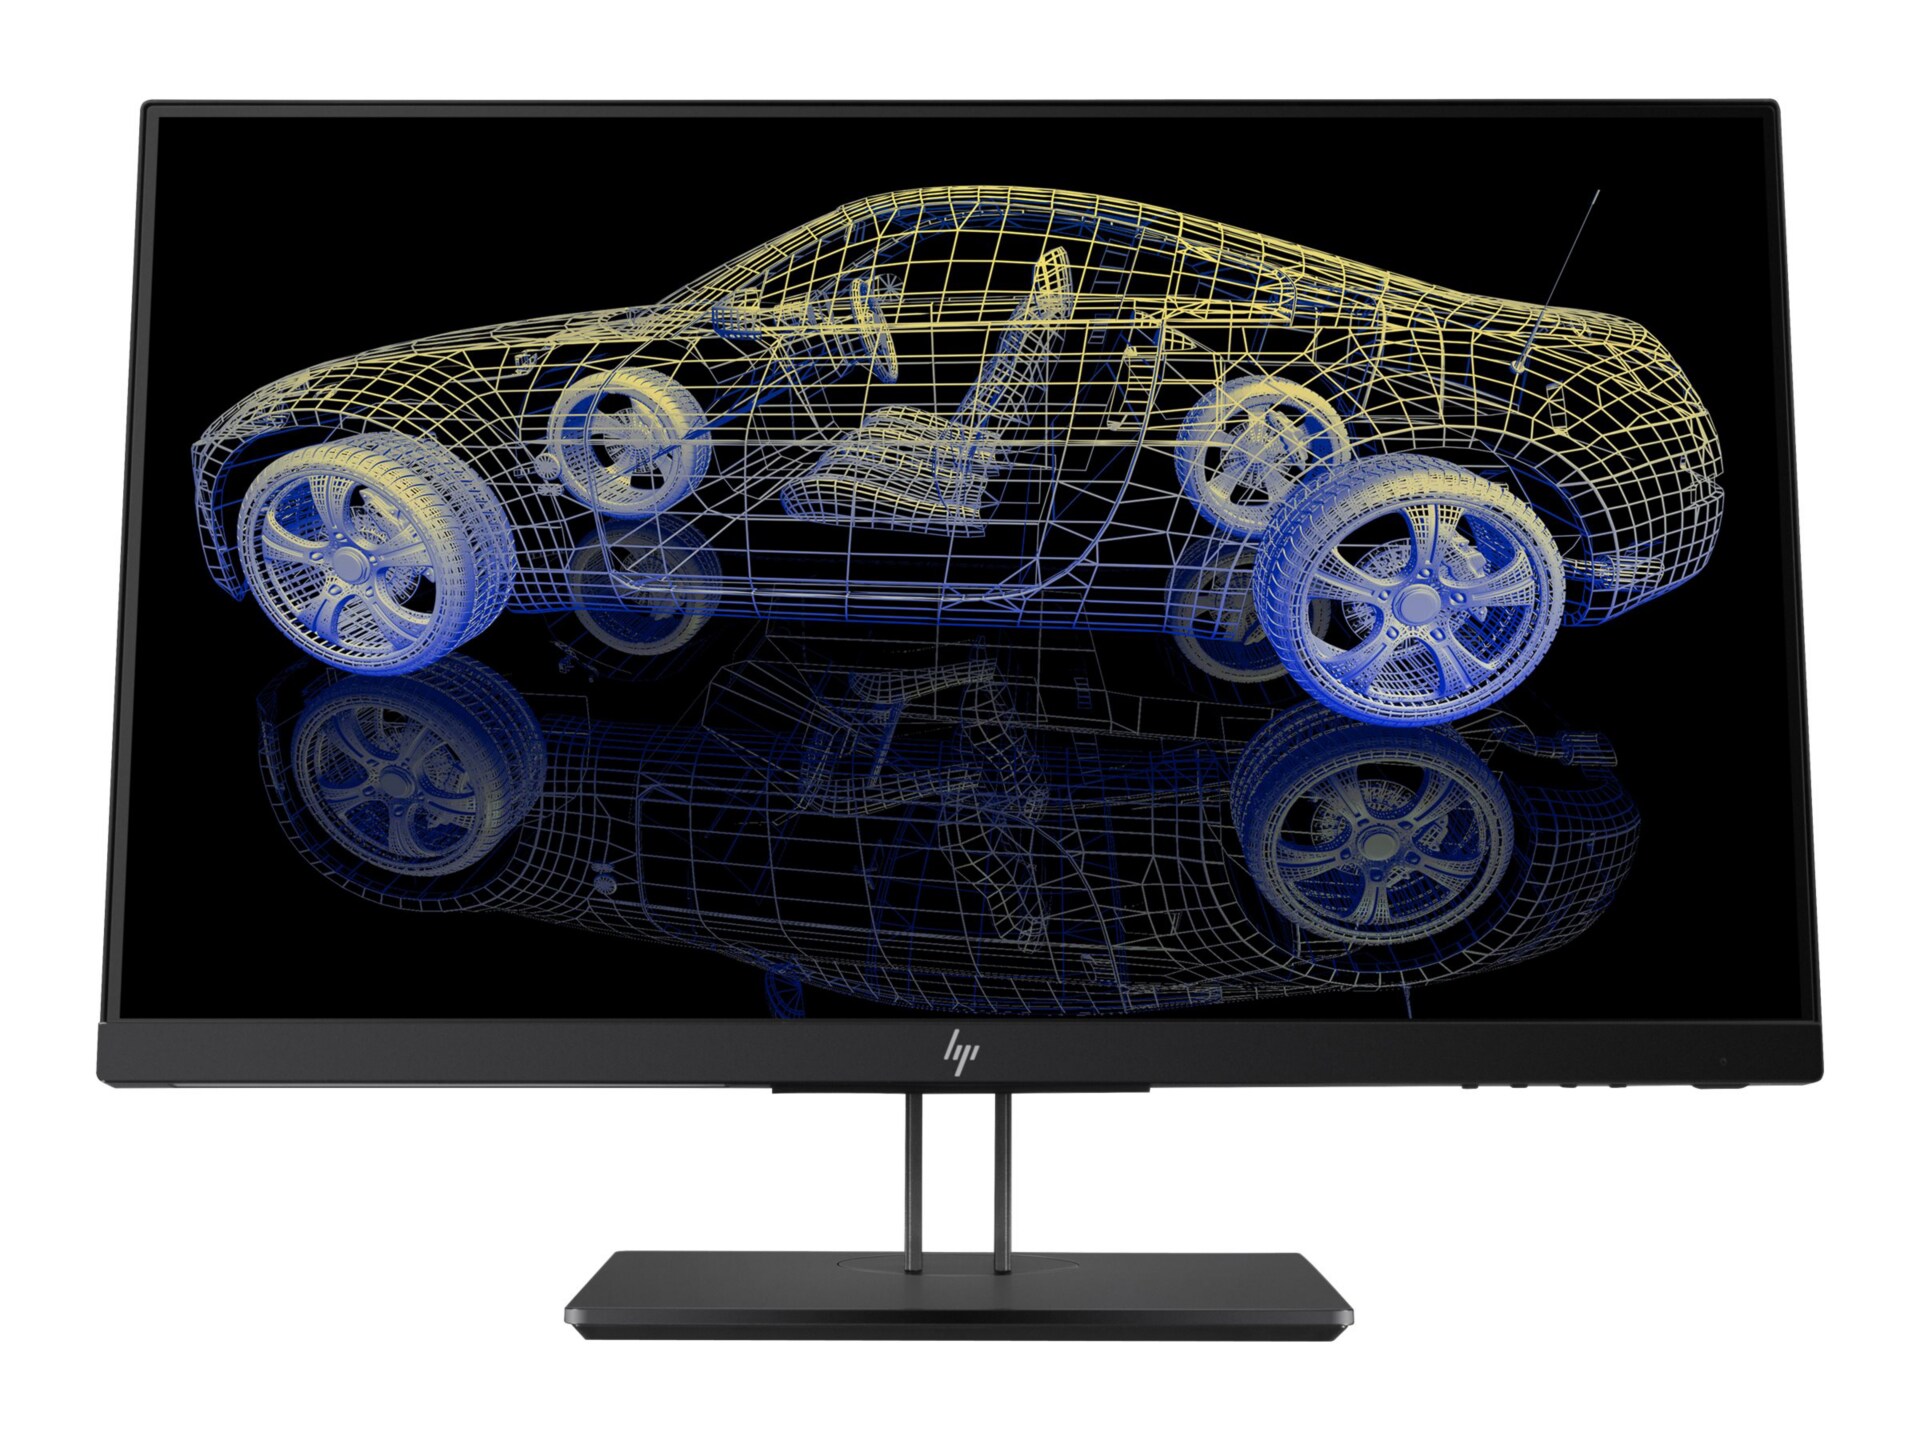 HP Z23n G2 - LED monitor - Full HD (1080p) - 23"